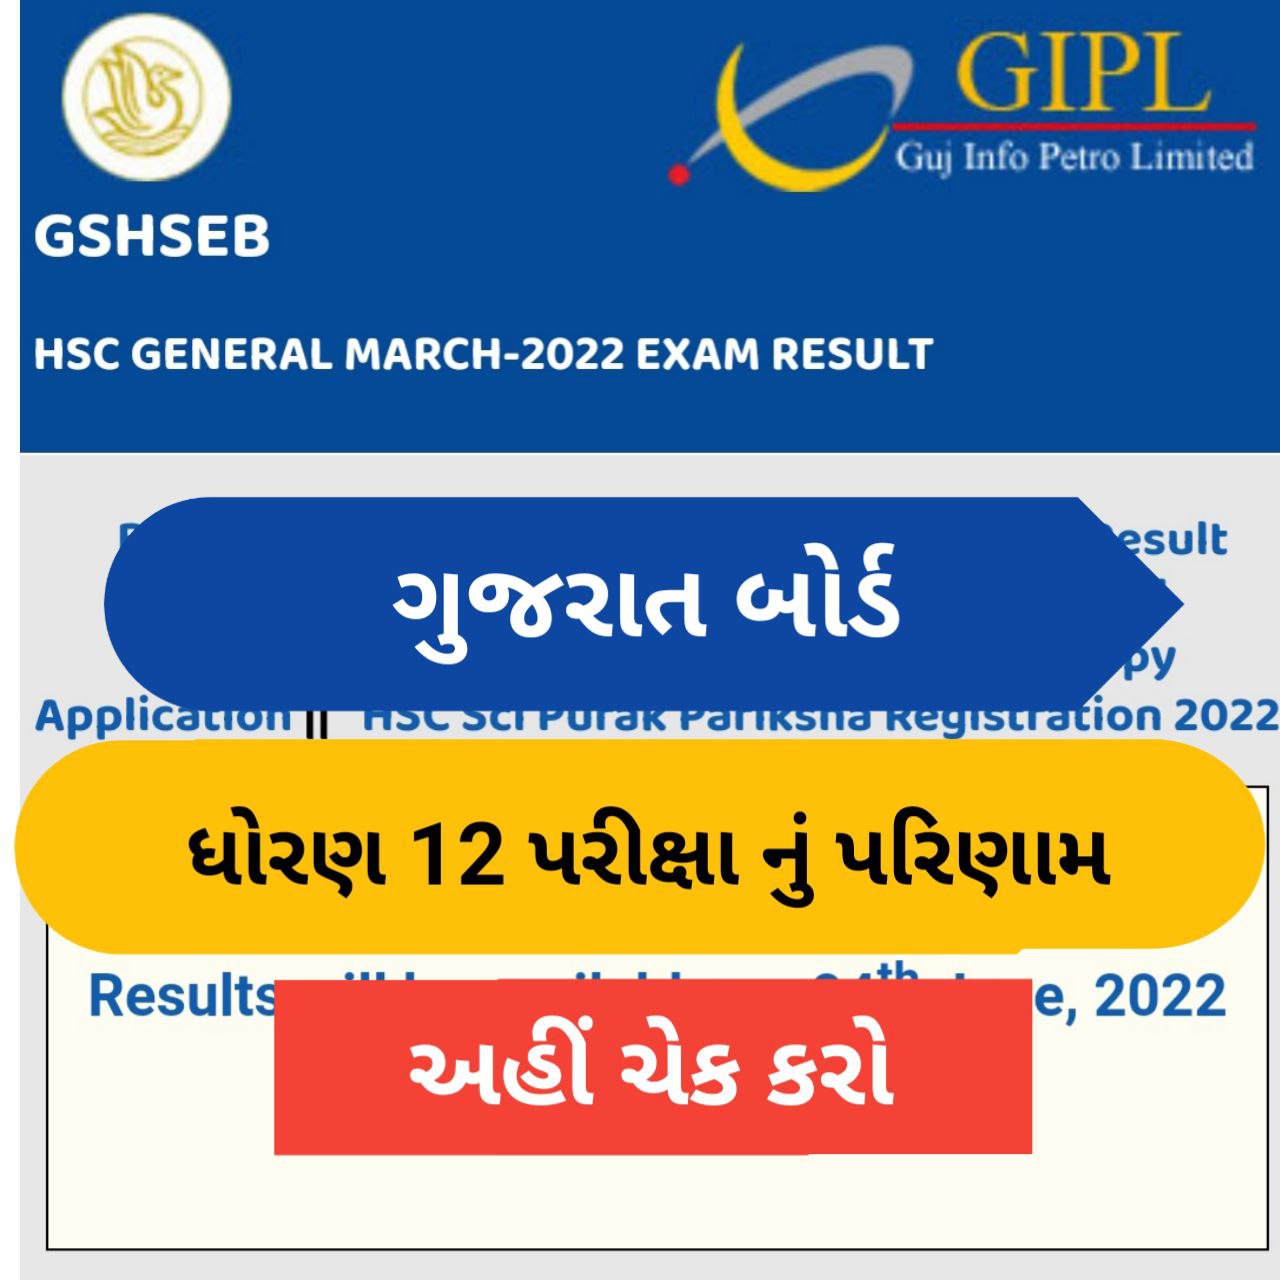 Gujarat Board Class 12th result declared Maru Gujarat Jobs